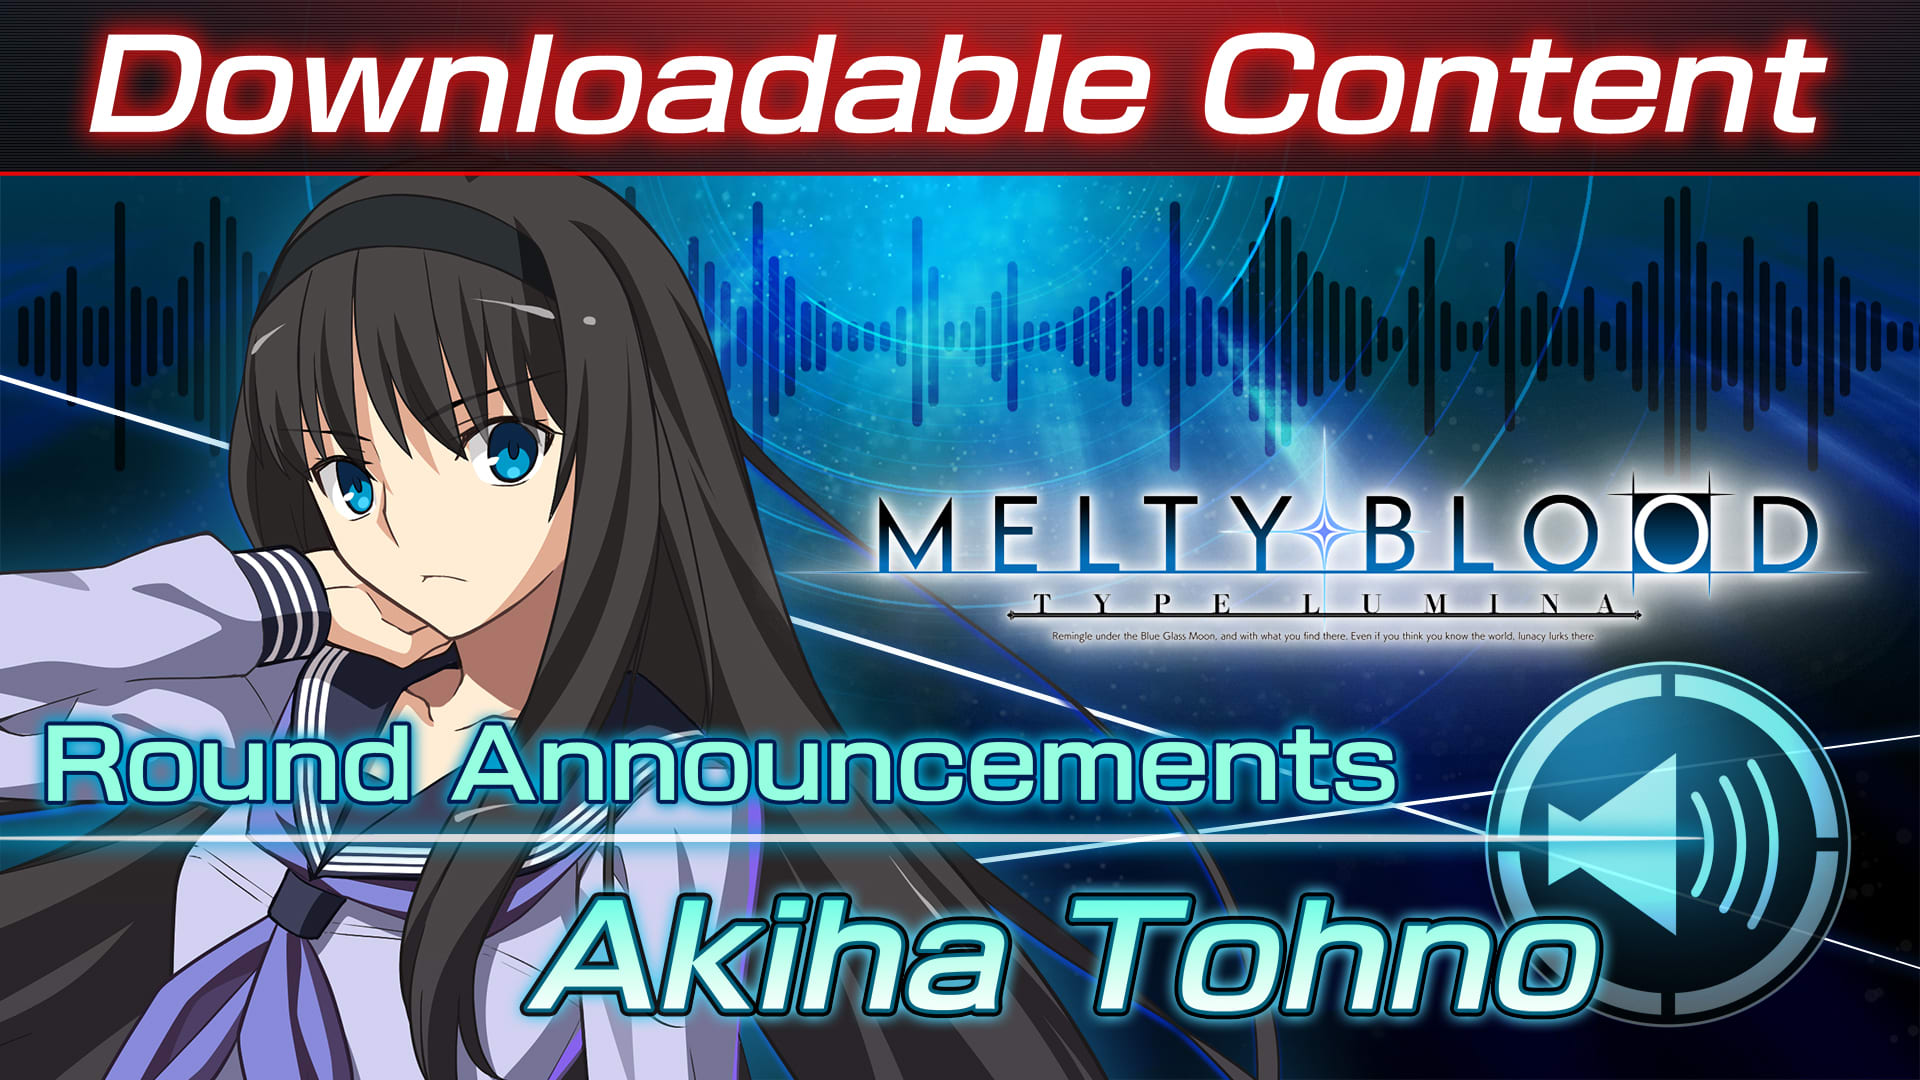 Conteúdo adicional "Voz de anúncio do round: Akiha Tohno"